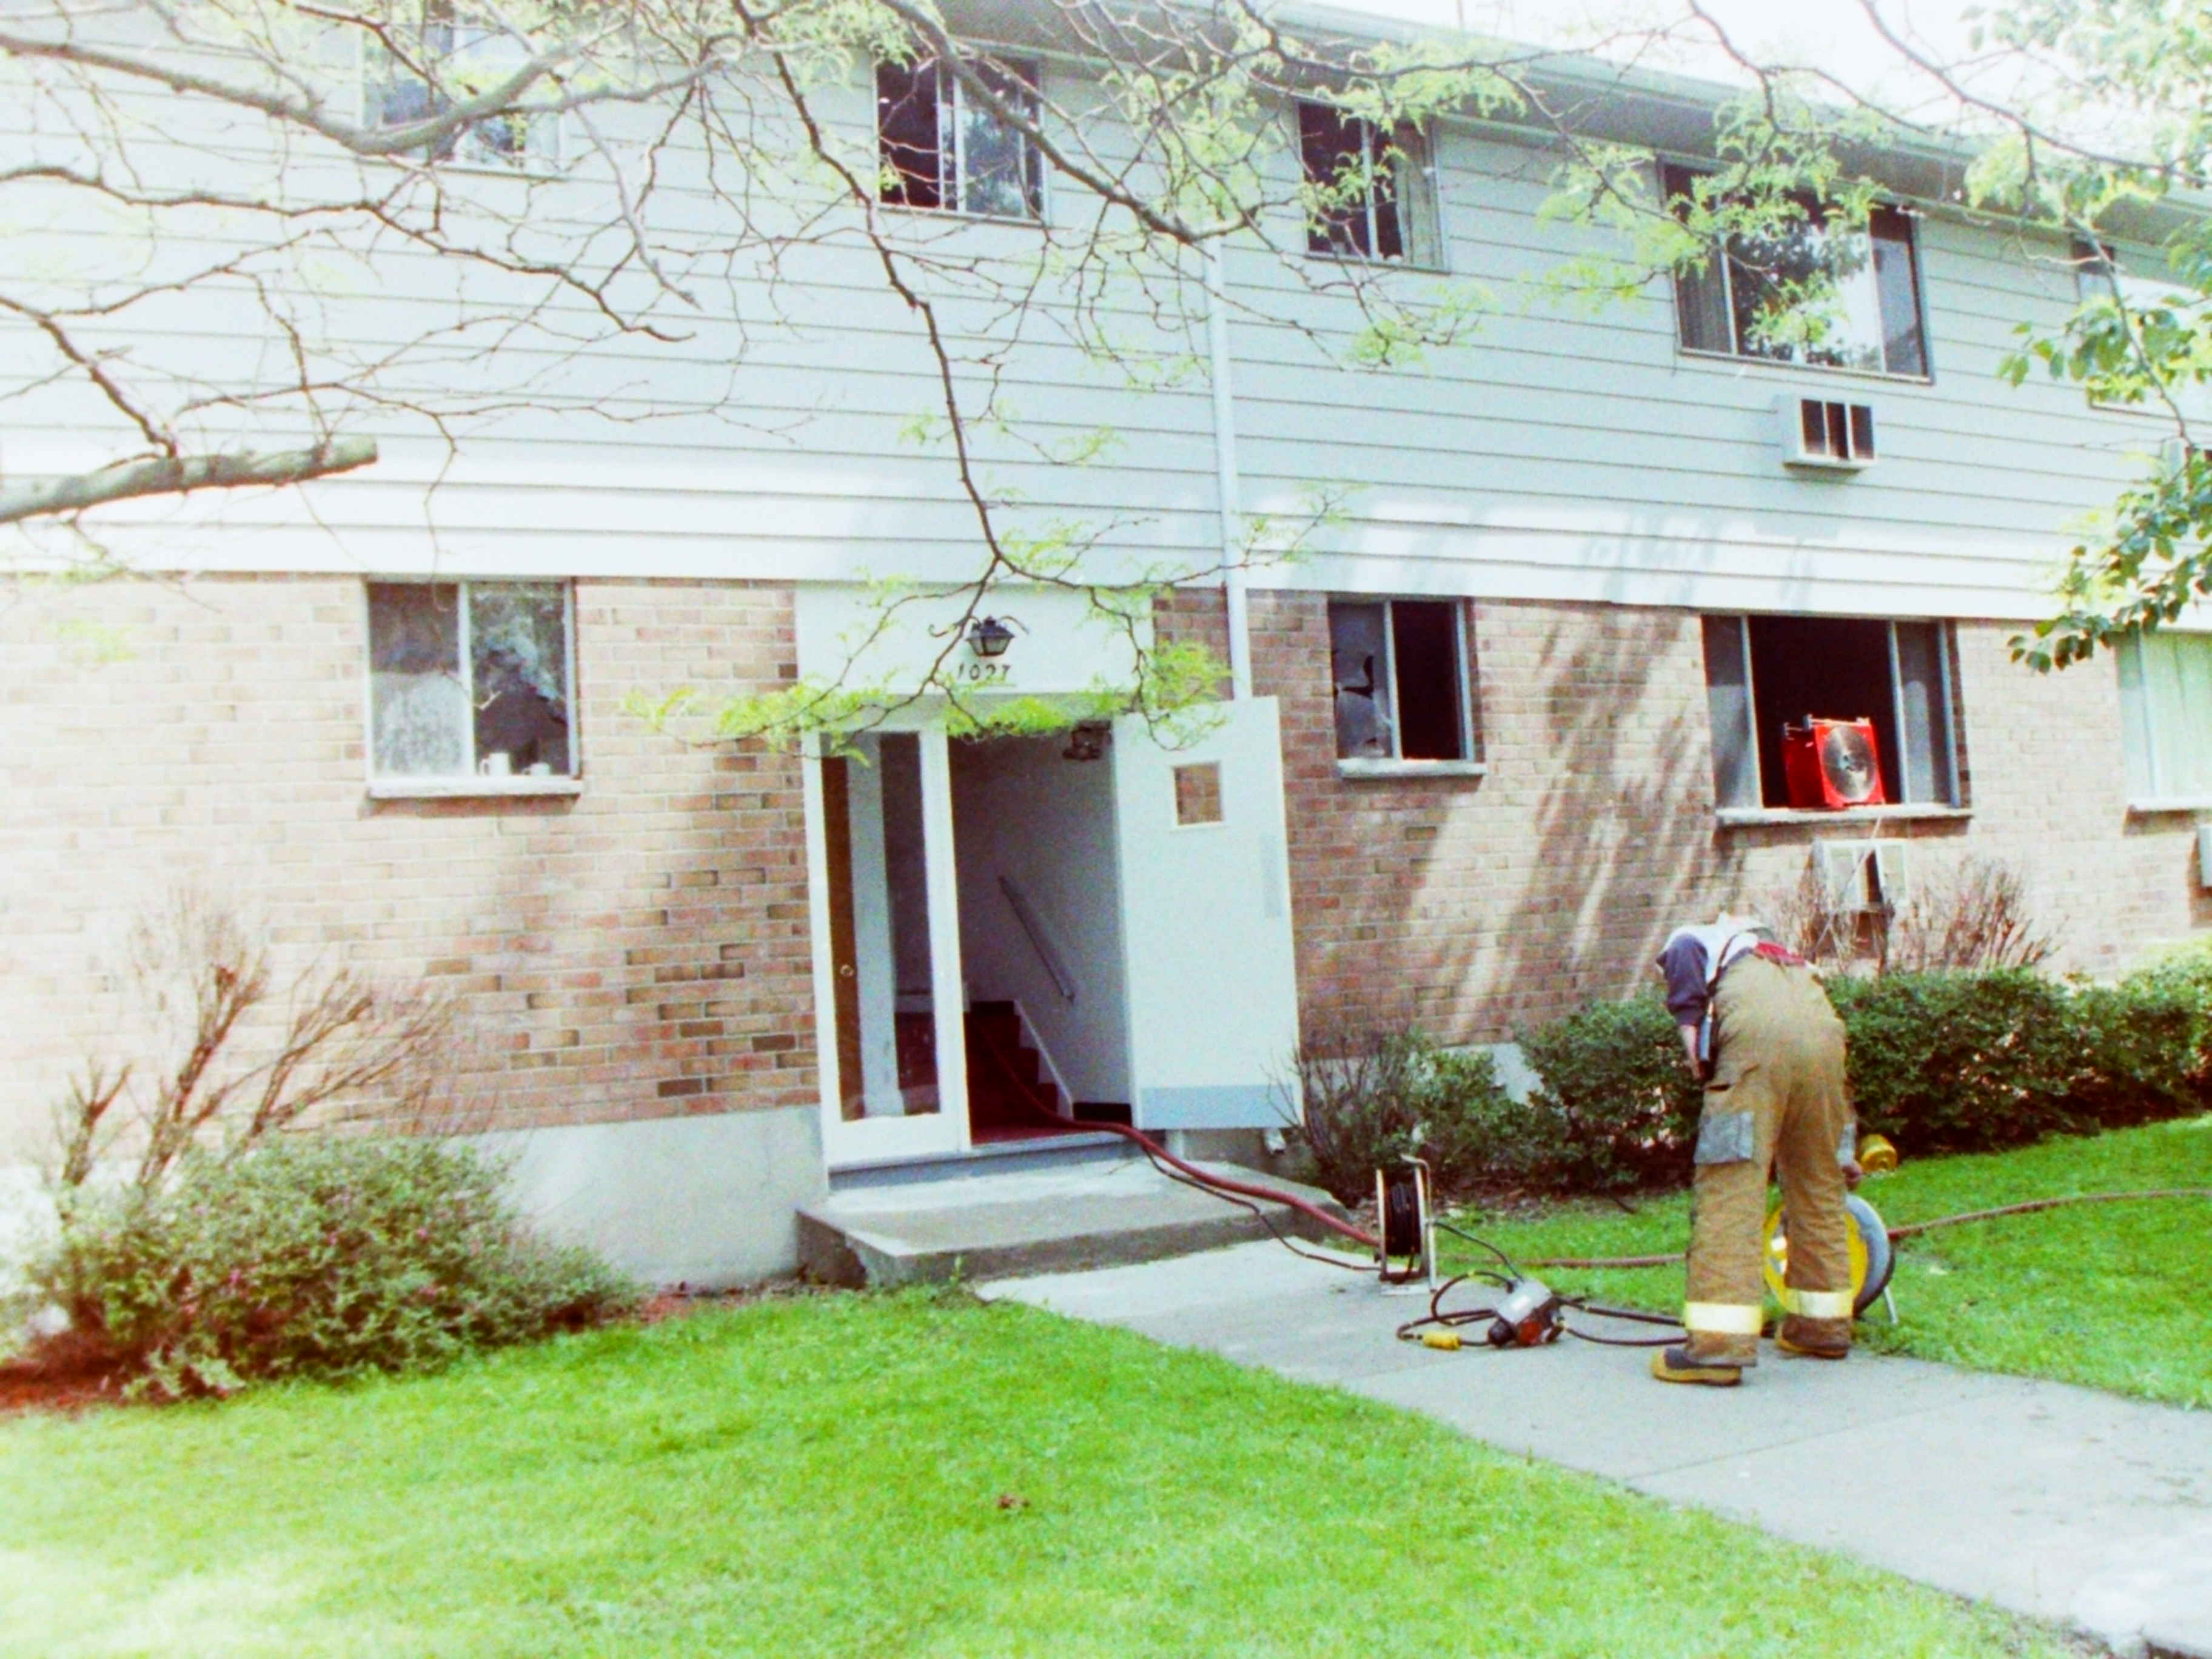 00-00-91  Response - Endwell 1991 Fires